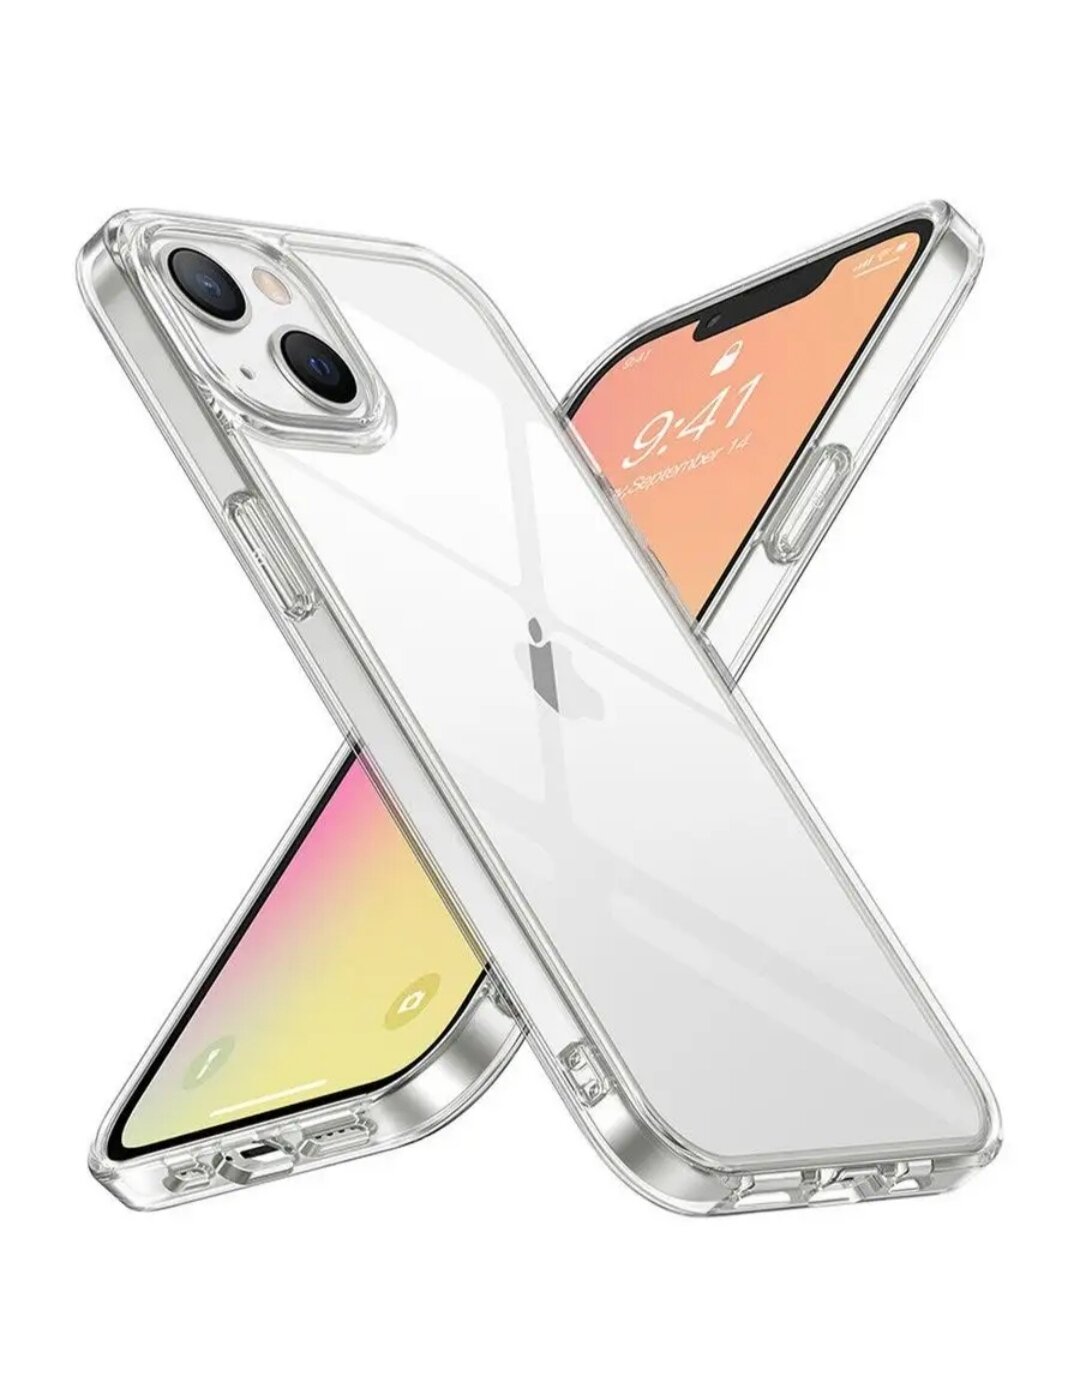 Ультратонкий силиконовый чехол для телефона iPhone 13 / Эпл Айфон 13 с дополнительной защитой камеры (Прозрачный)